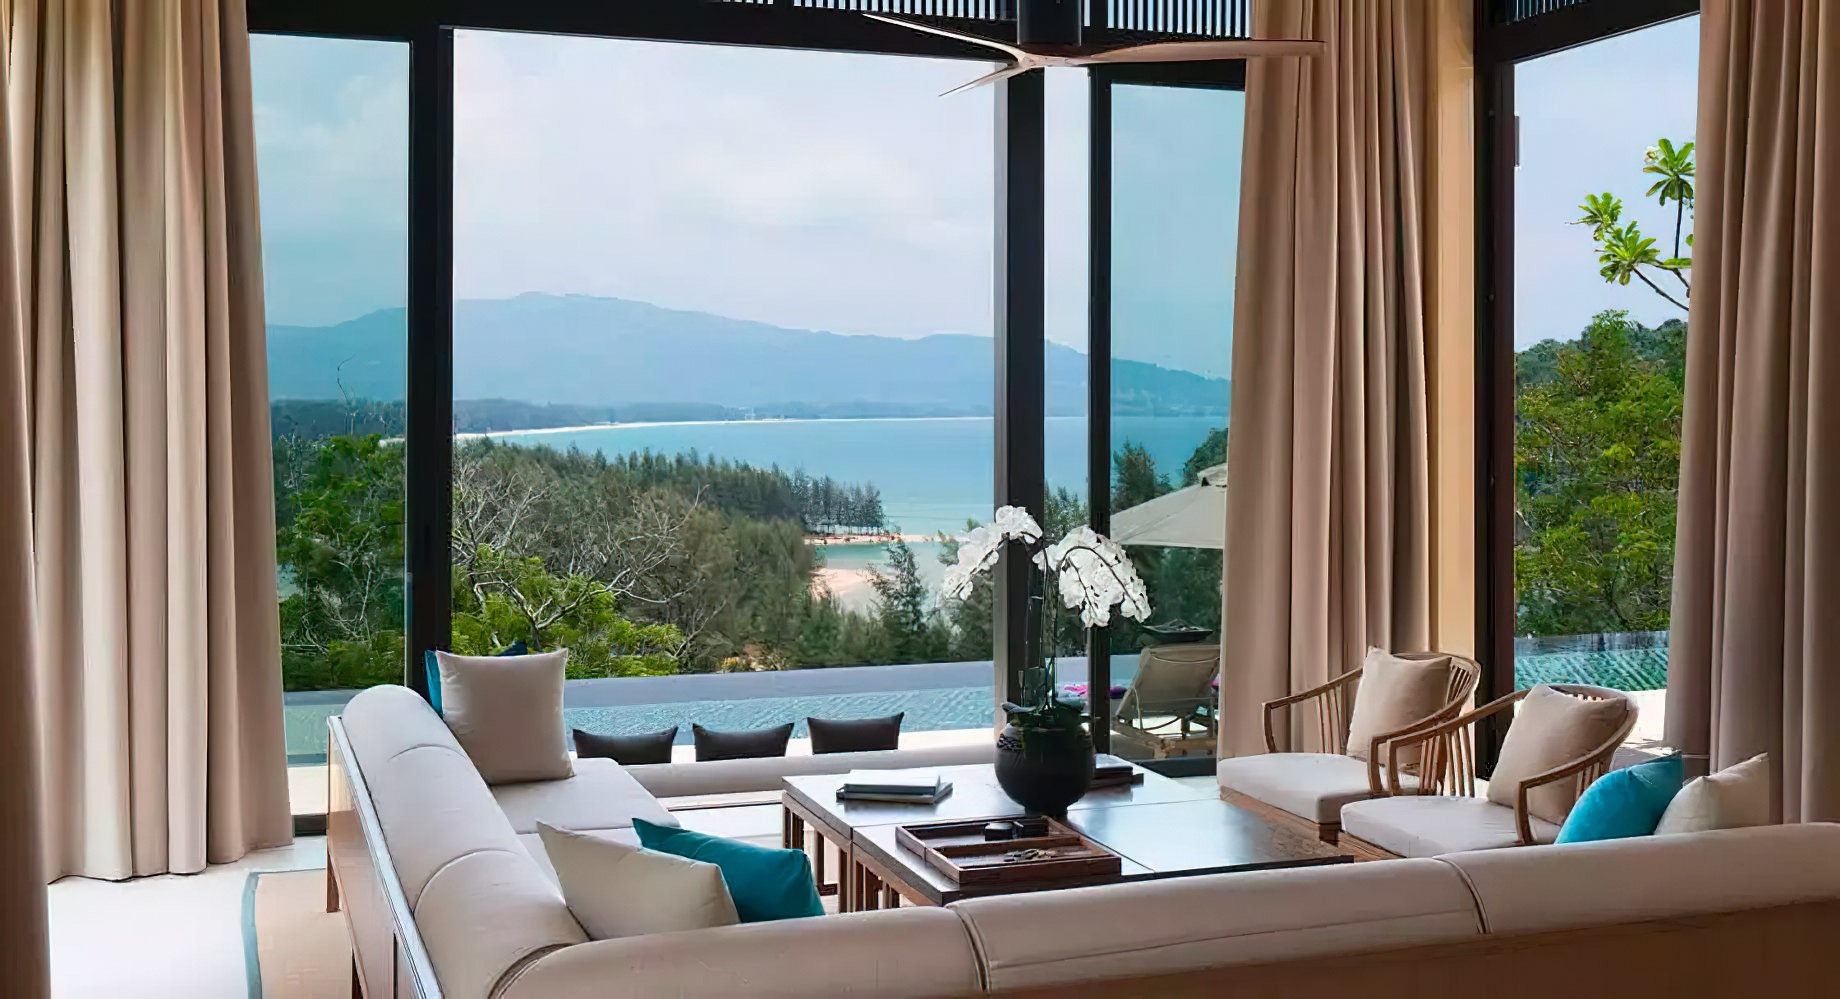 Anantara Layan Phuket Resort & Residences – Thailand – Four Bedroom Sea View Residence View